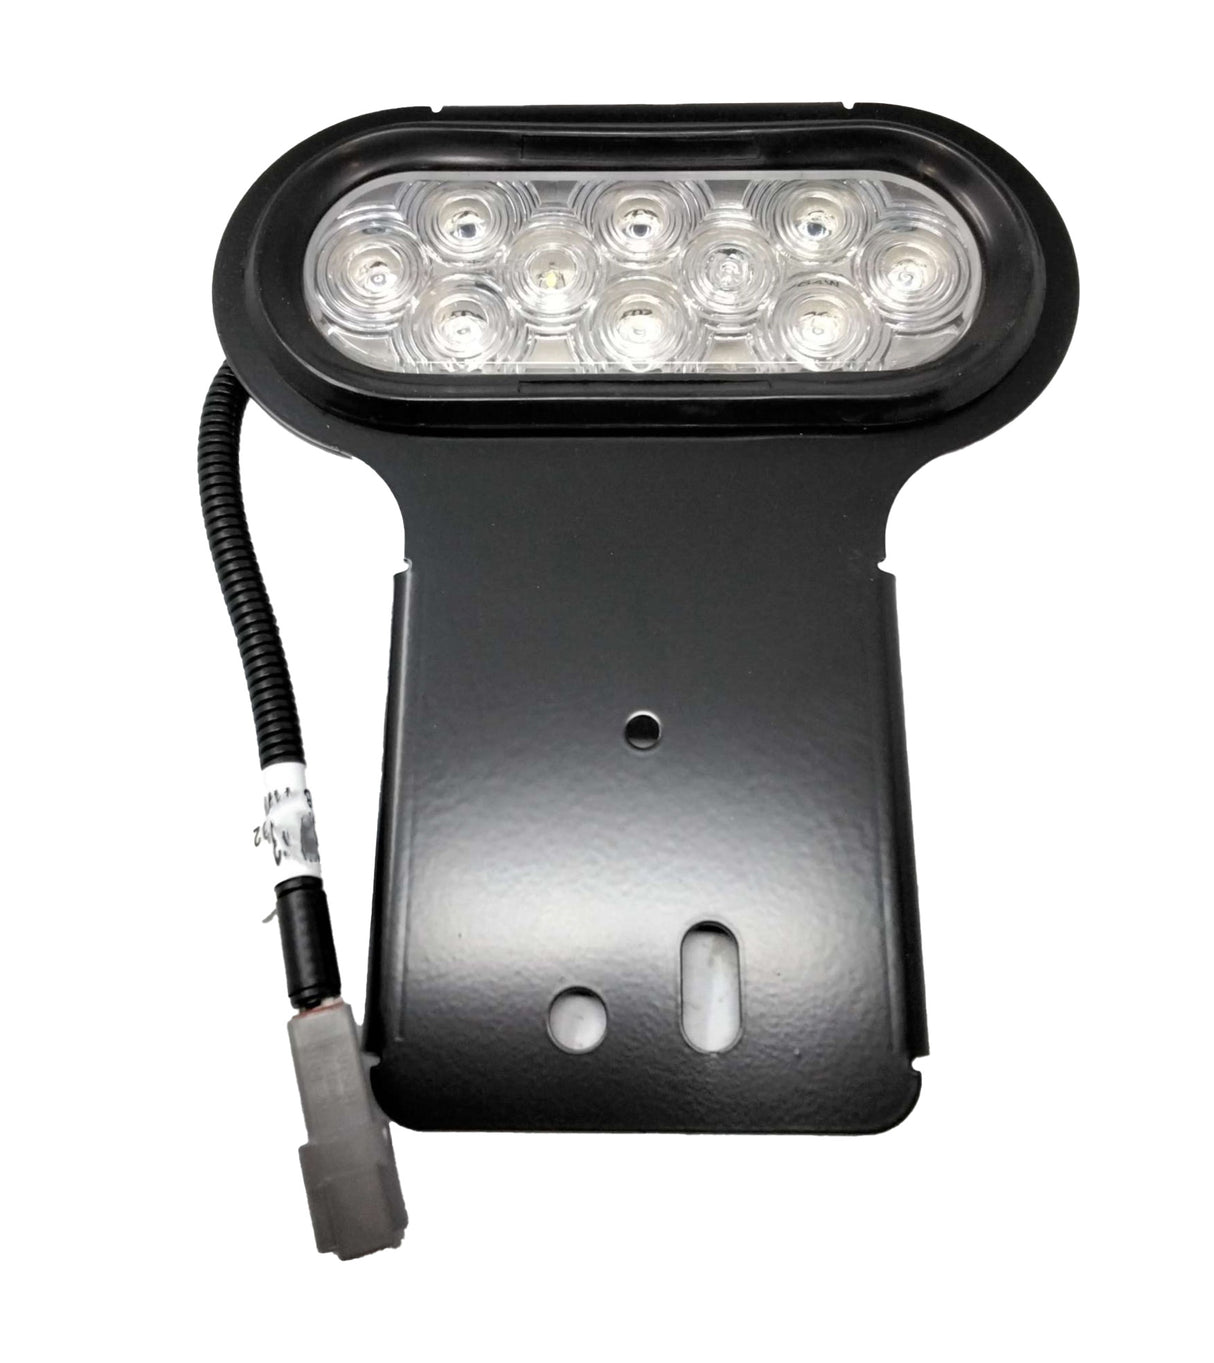 VEHICLE SAFETY MFG CO  ­-­ 6464WKY202 ­-­ AUXILLARY LAMP - WHITE OVAL 10 LED W/BRACKET